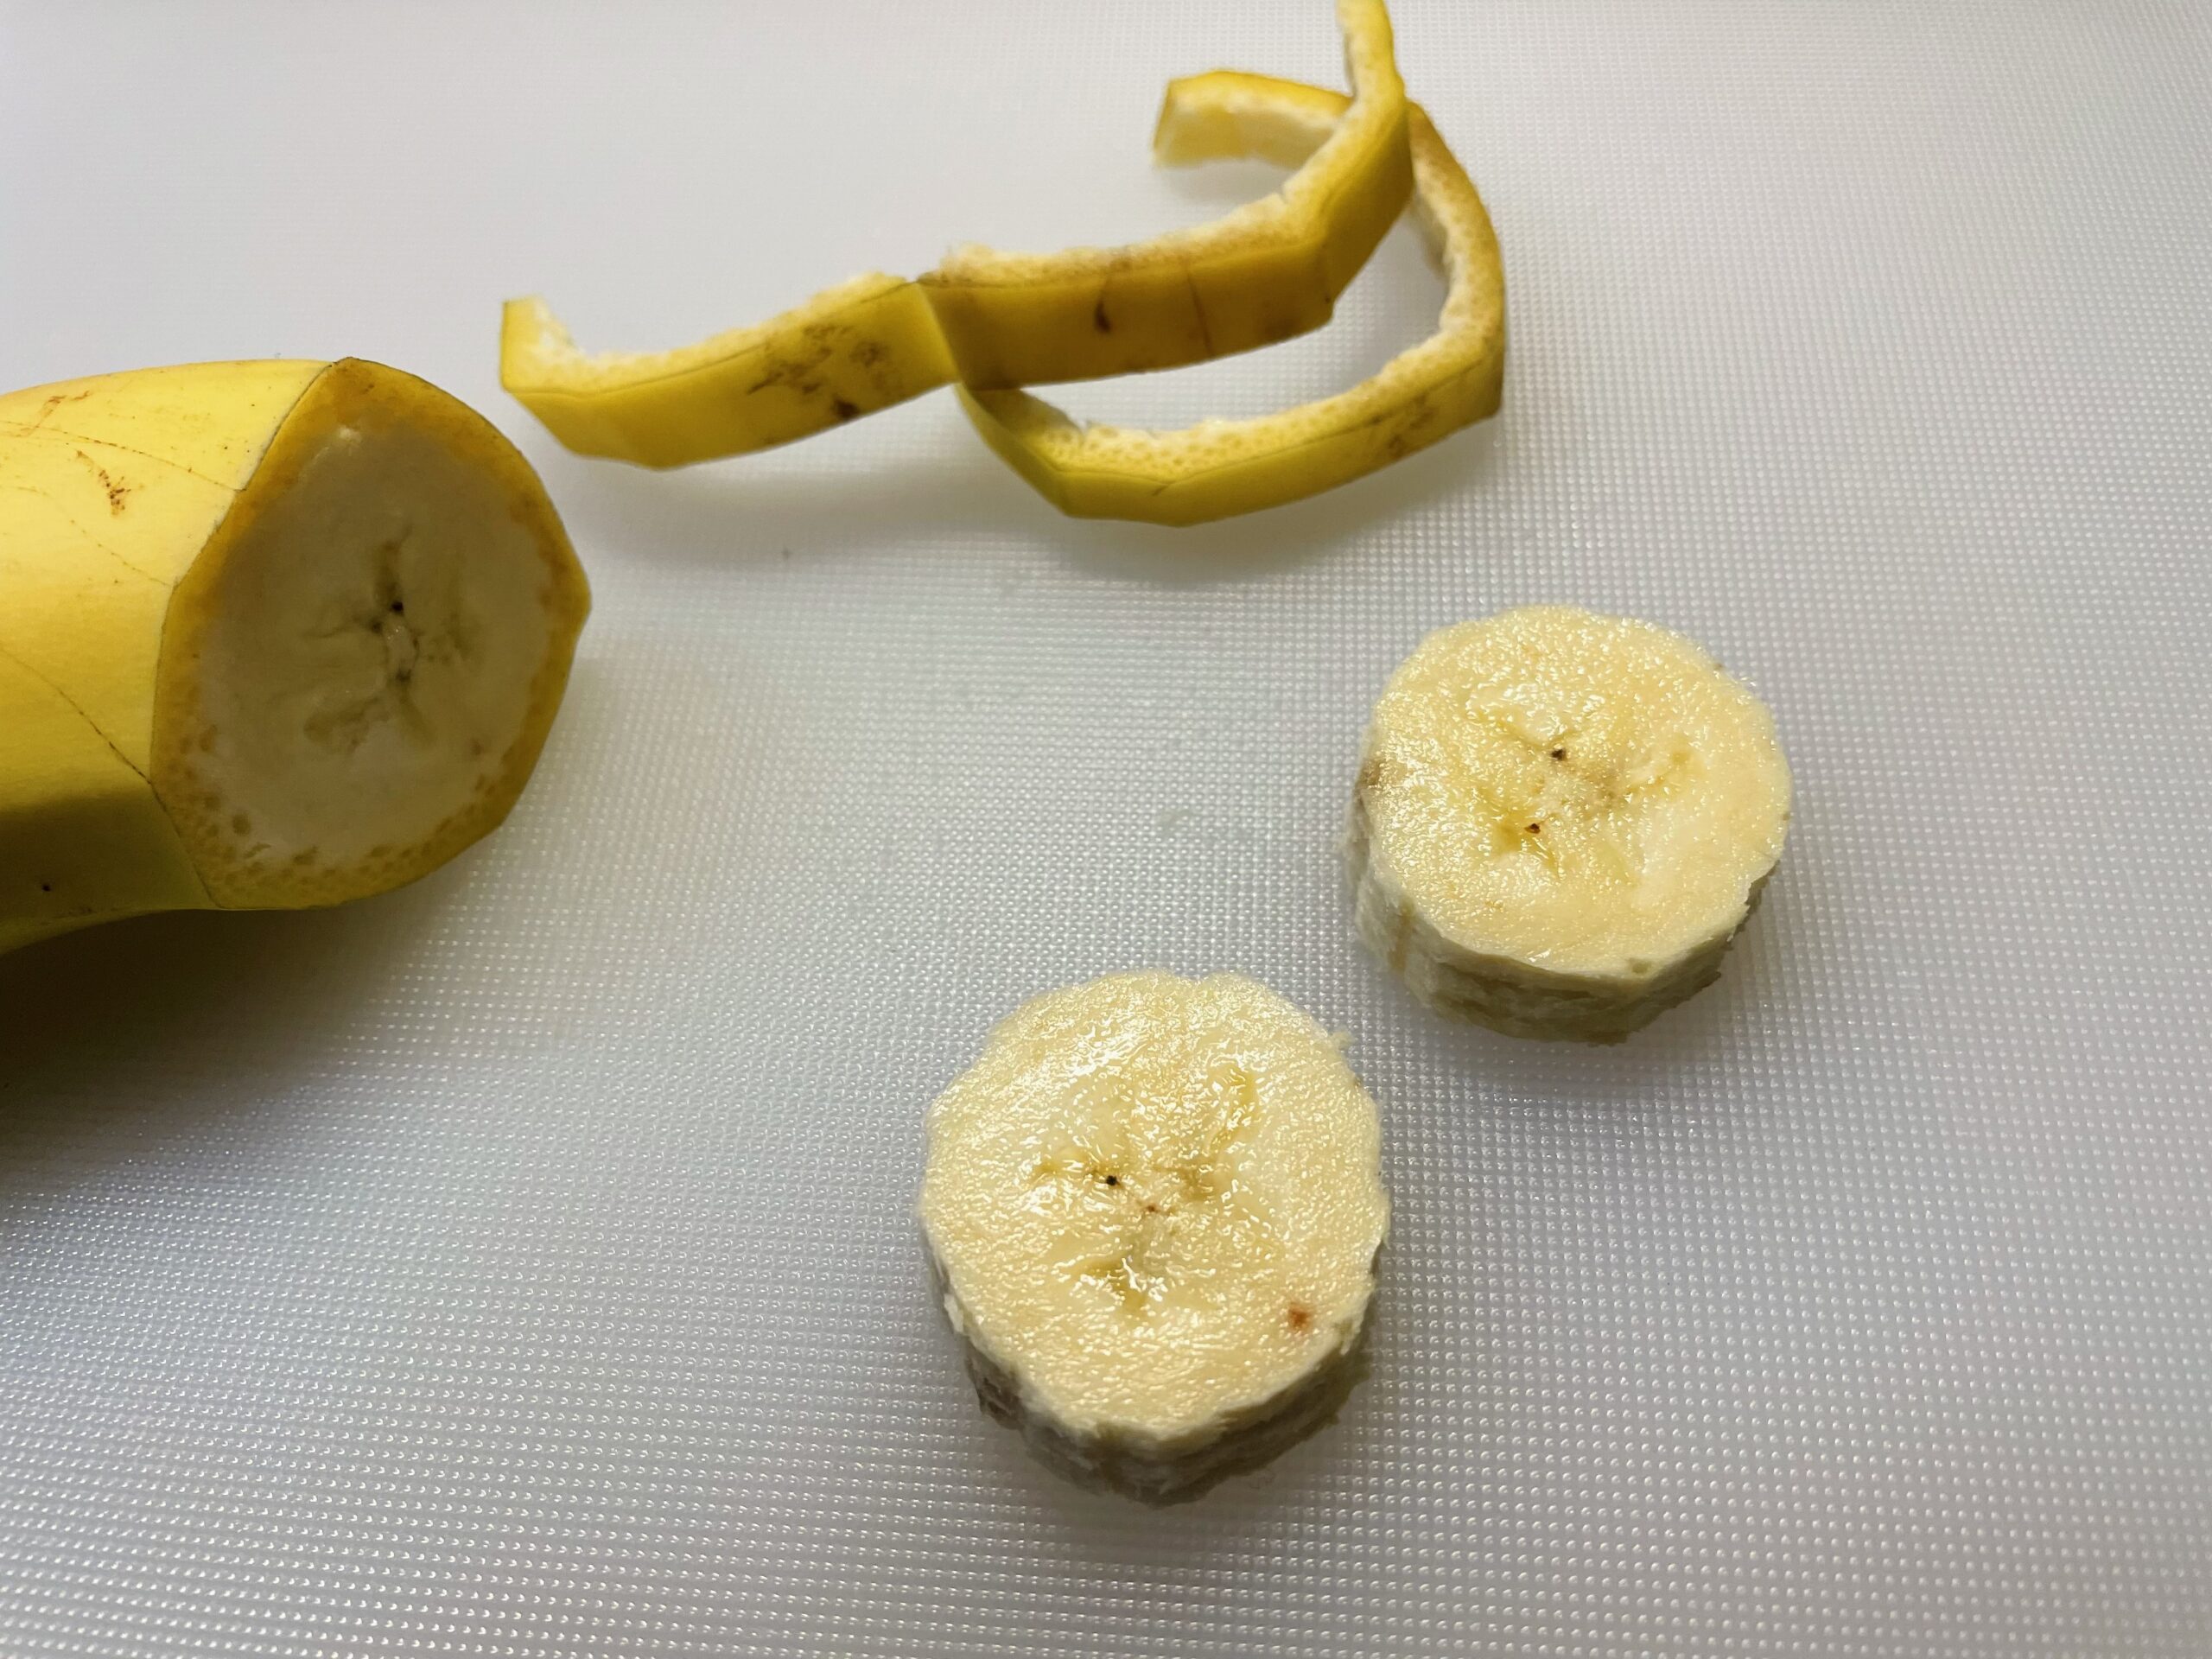 Bild zum Schritt 13 für das Bastel- und DIY-Abenteuer für Kinder: 'Jede einzelne Bananenscheiben wird eine kleine Biene.'